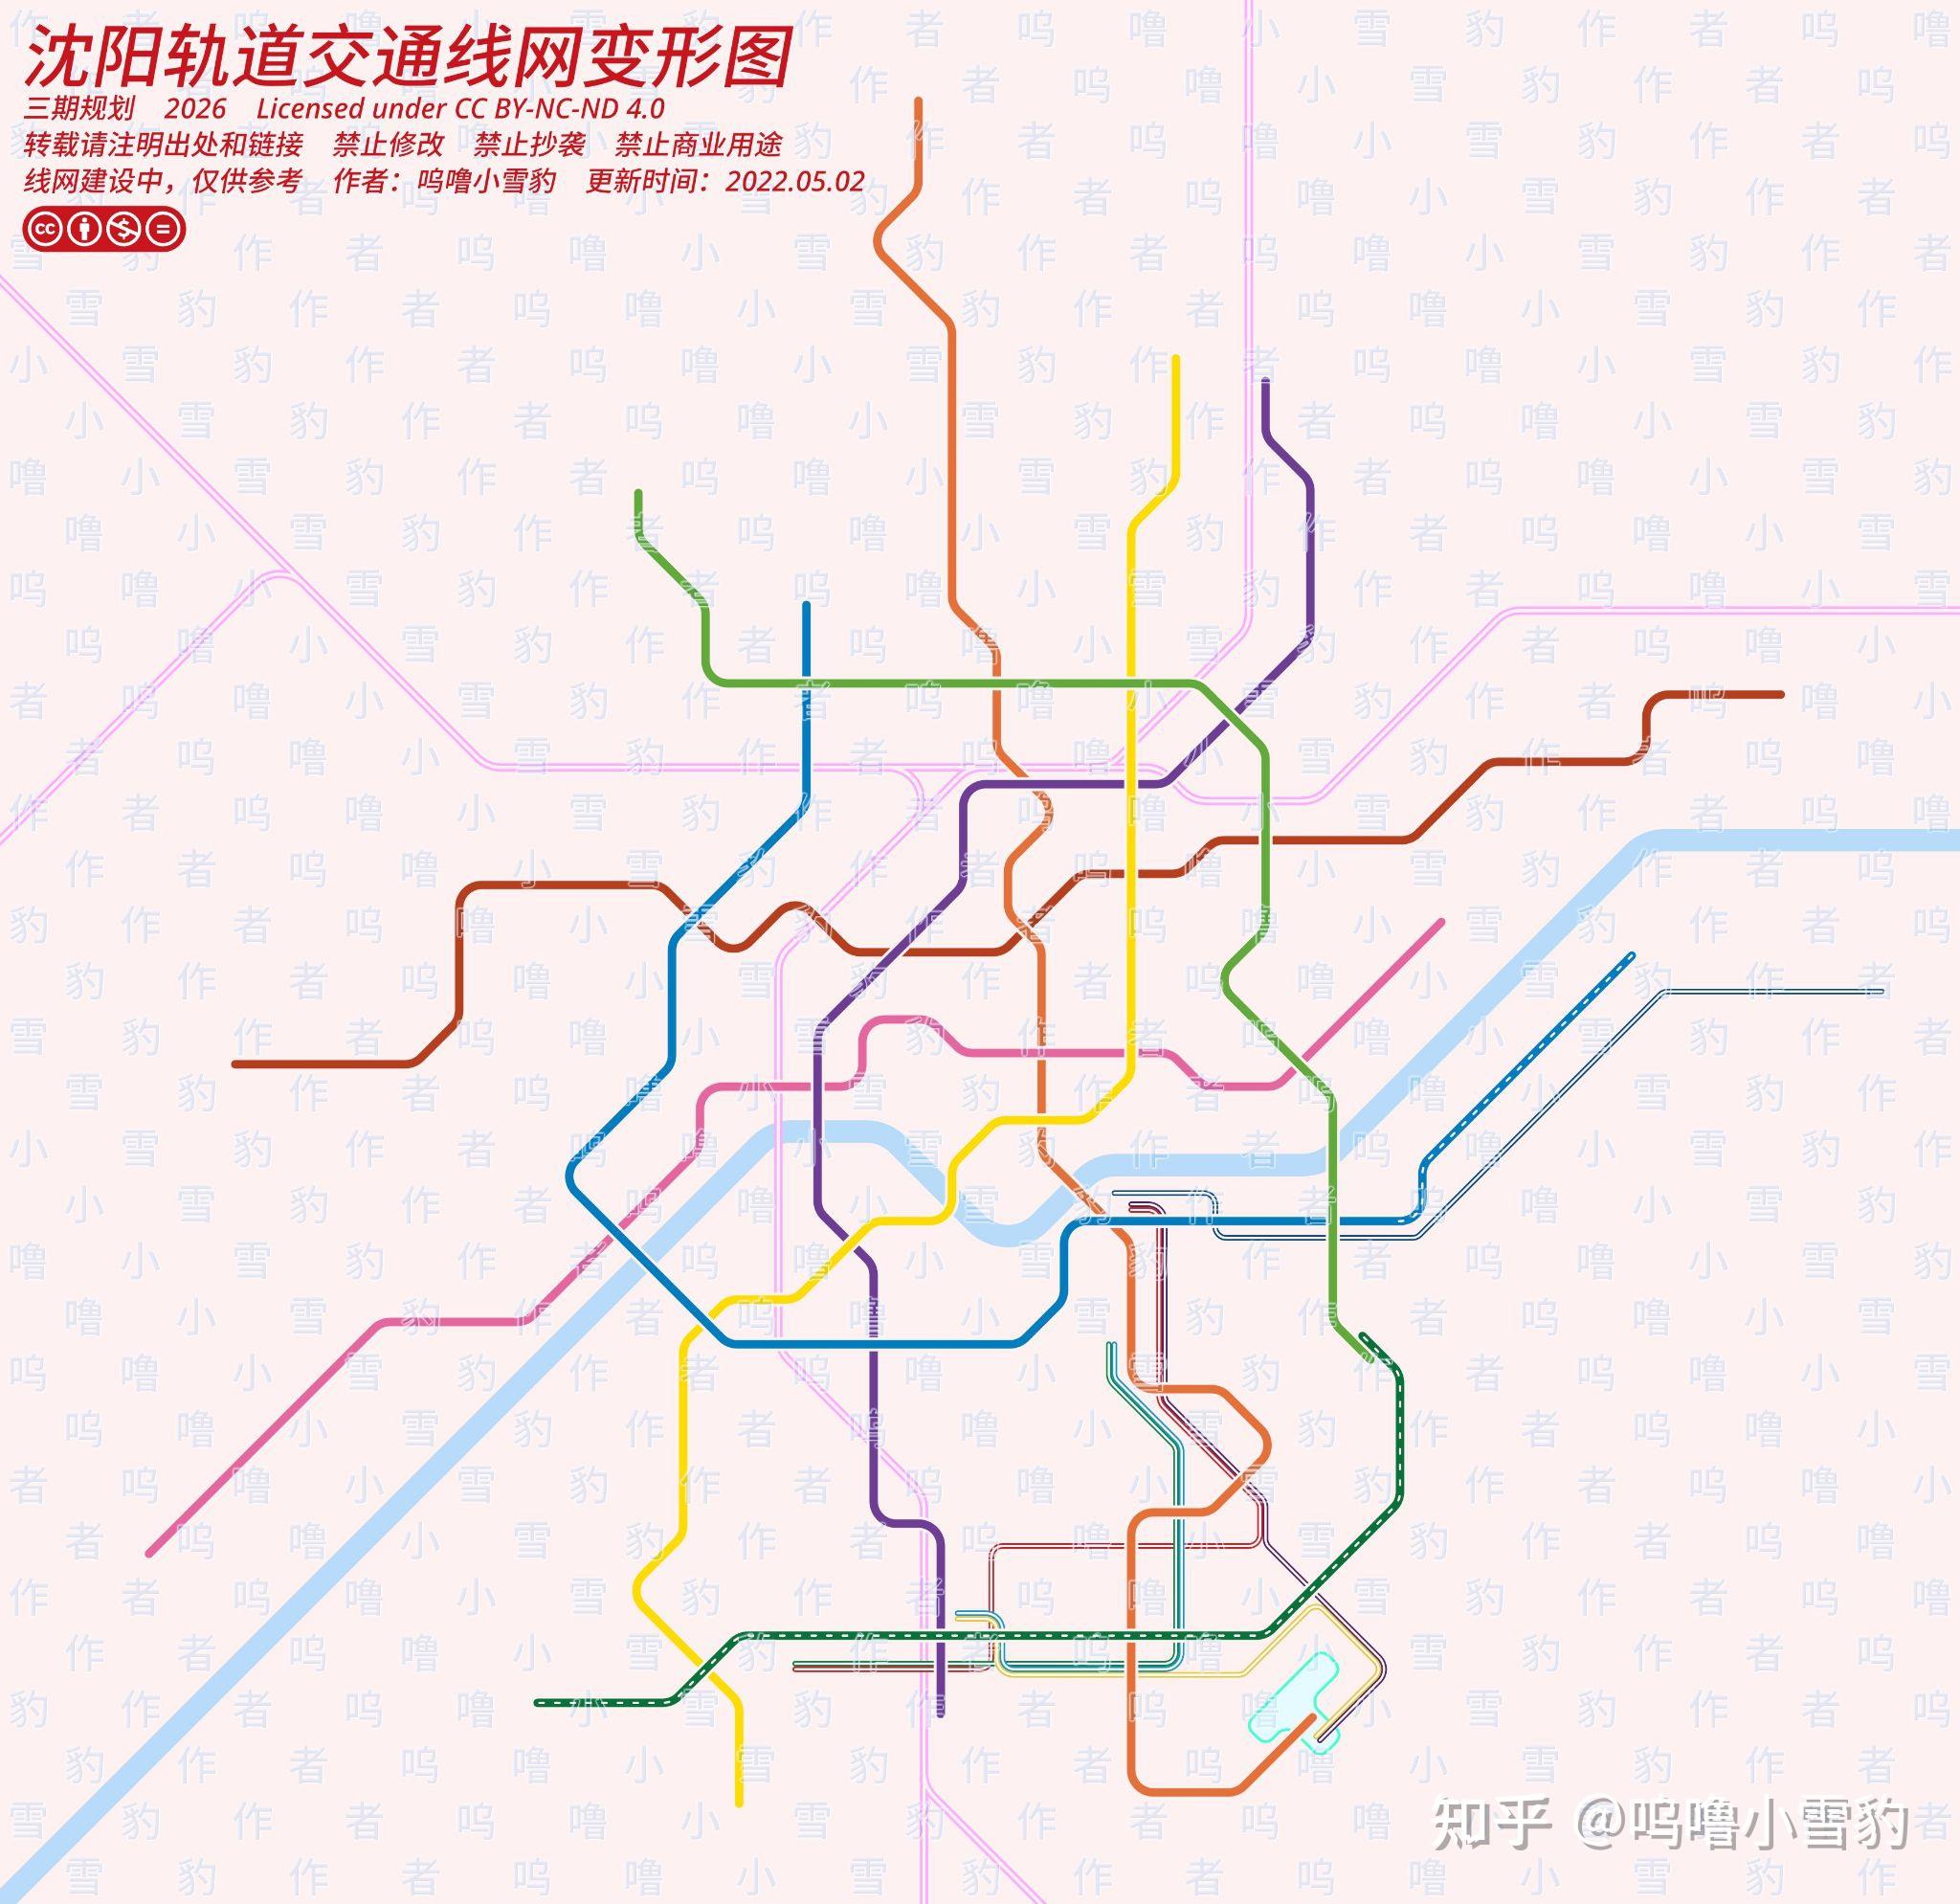 自制《沈阳轨道交通线网变形图(三期规划)》